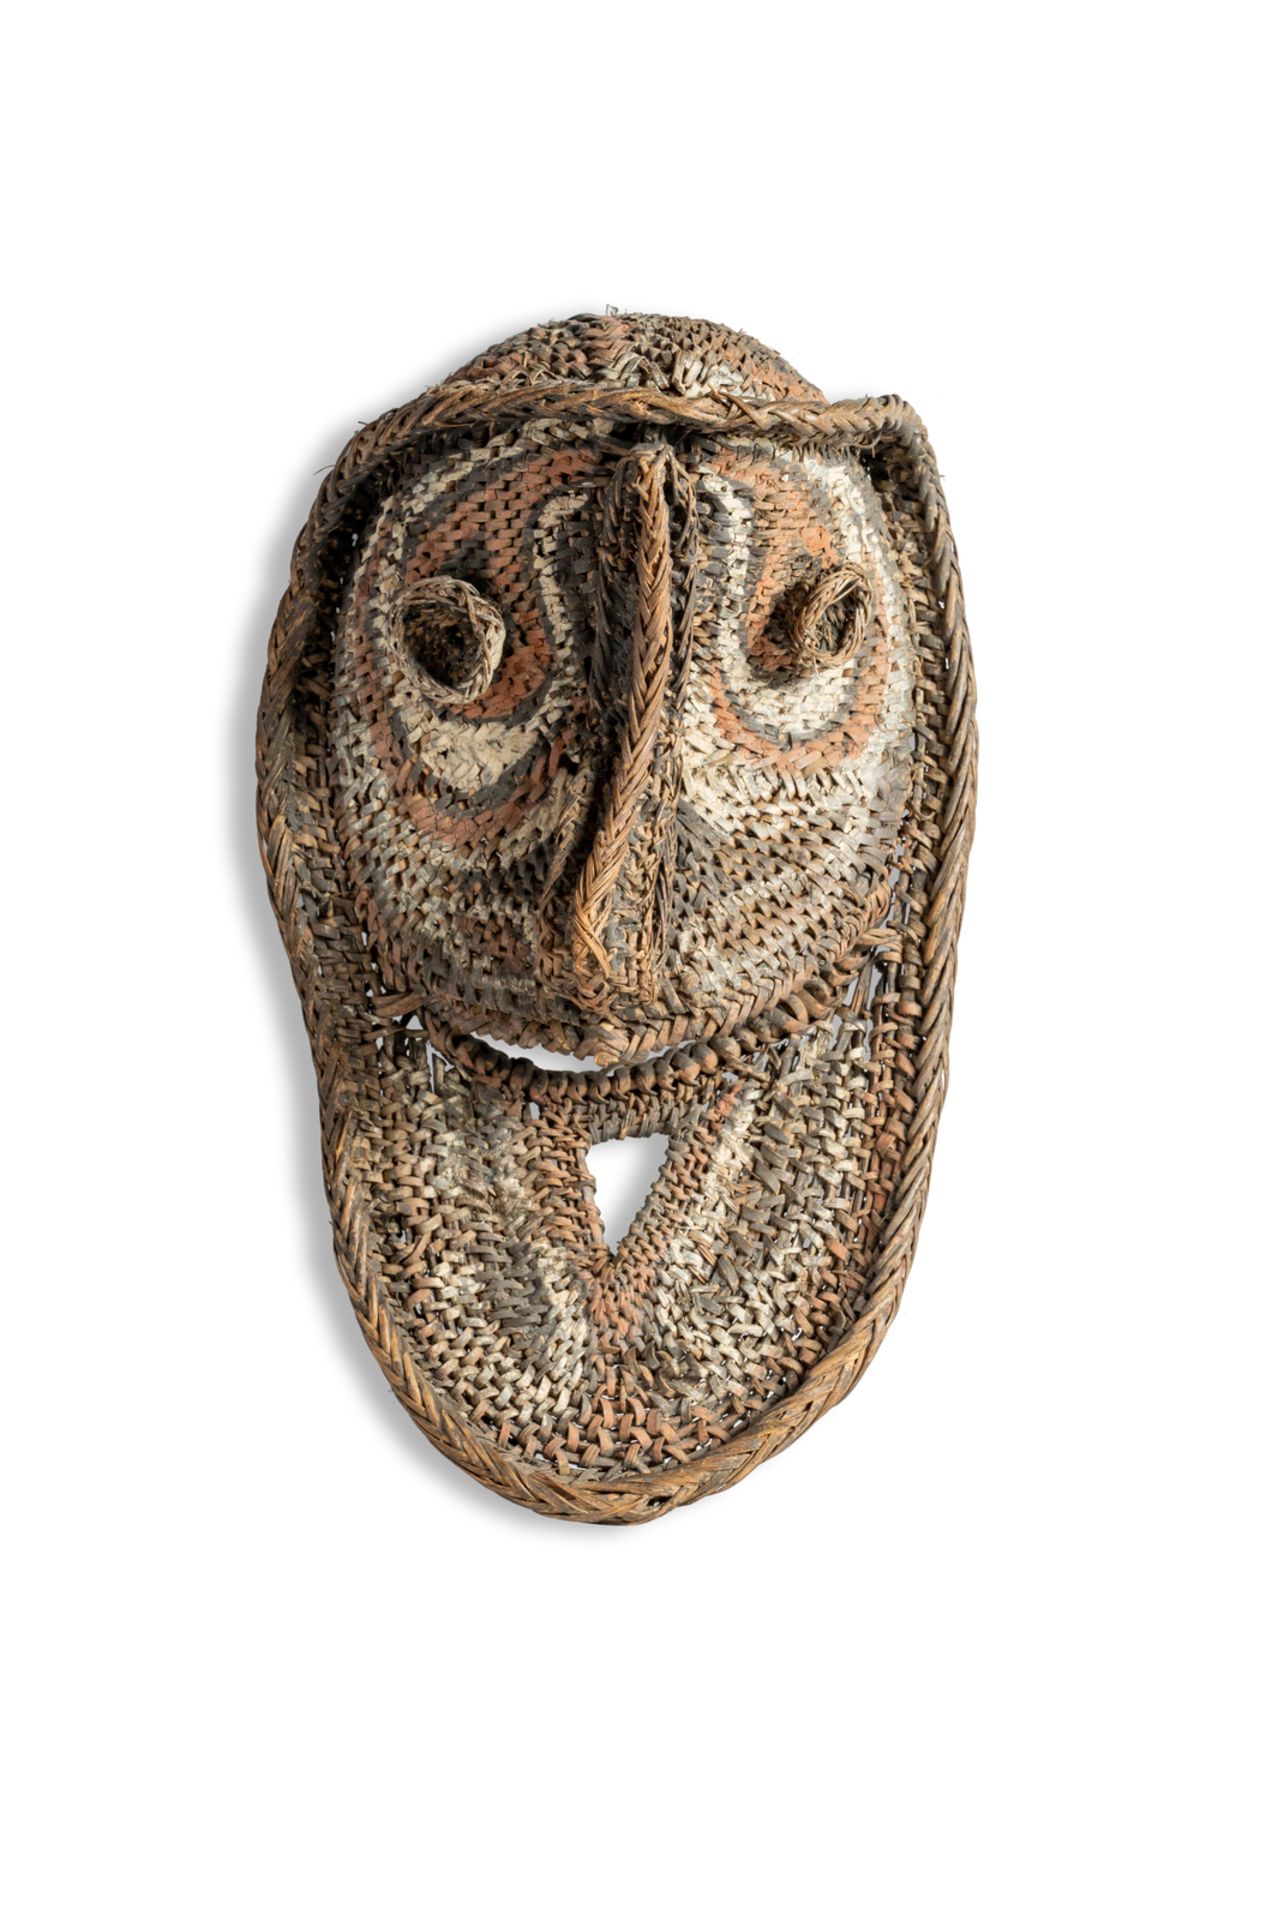 Abelam mask. Papua New Guinea.